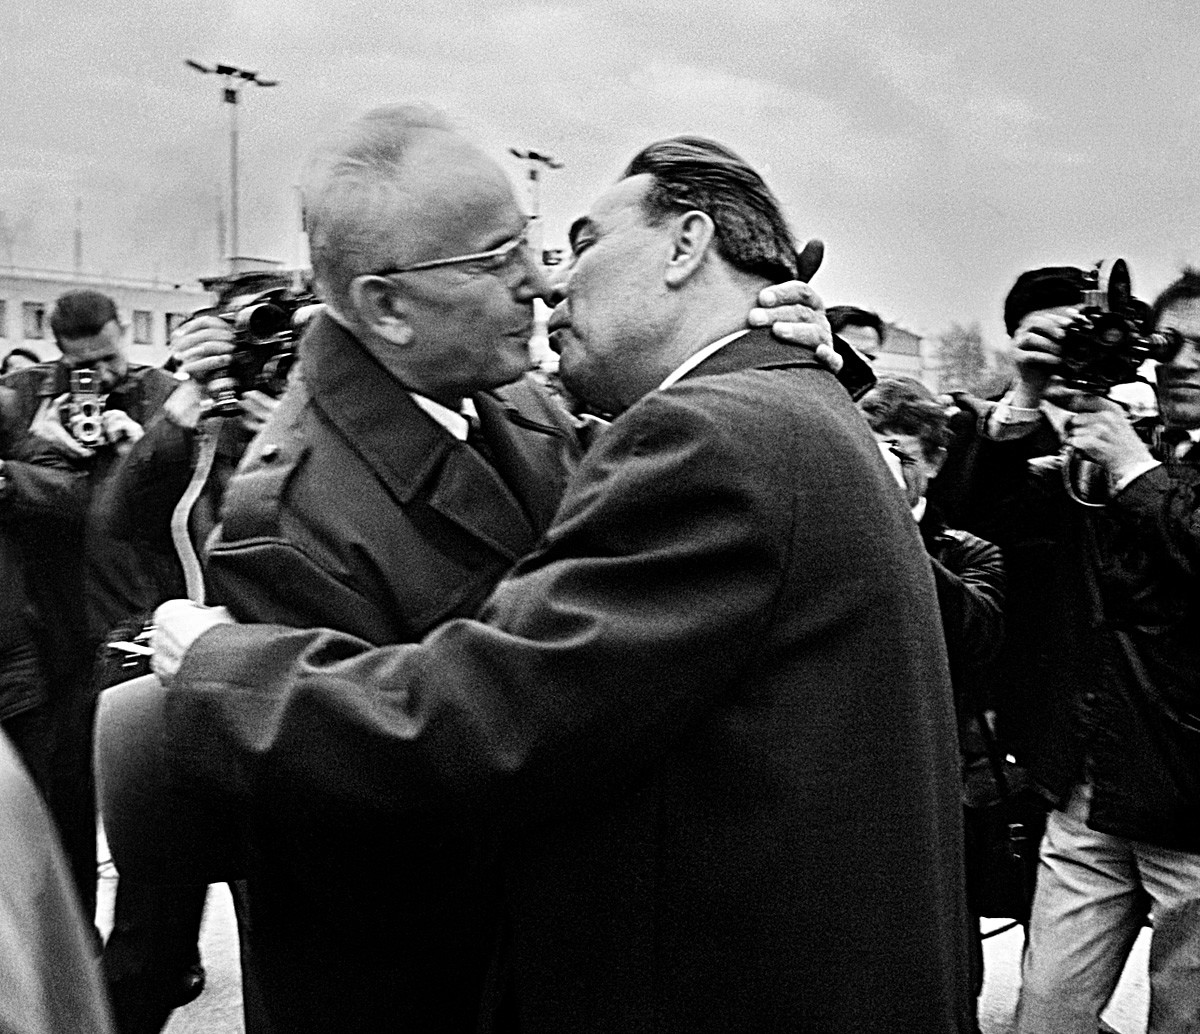 ブレジネフ書記長の熱いキスから逃れるため必死になった首脳たち 写真特集 ロシア ビヨンド